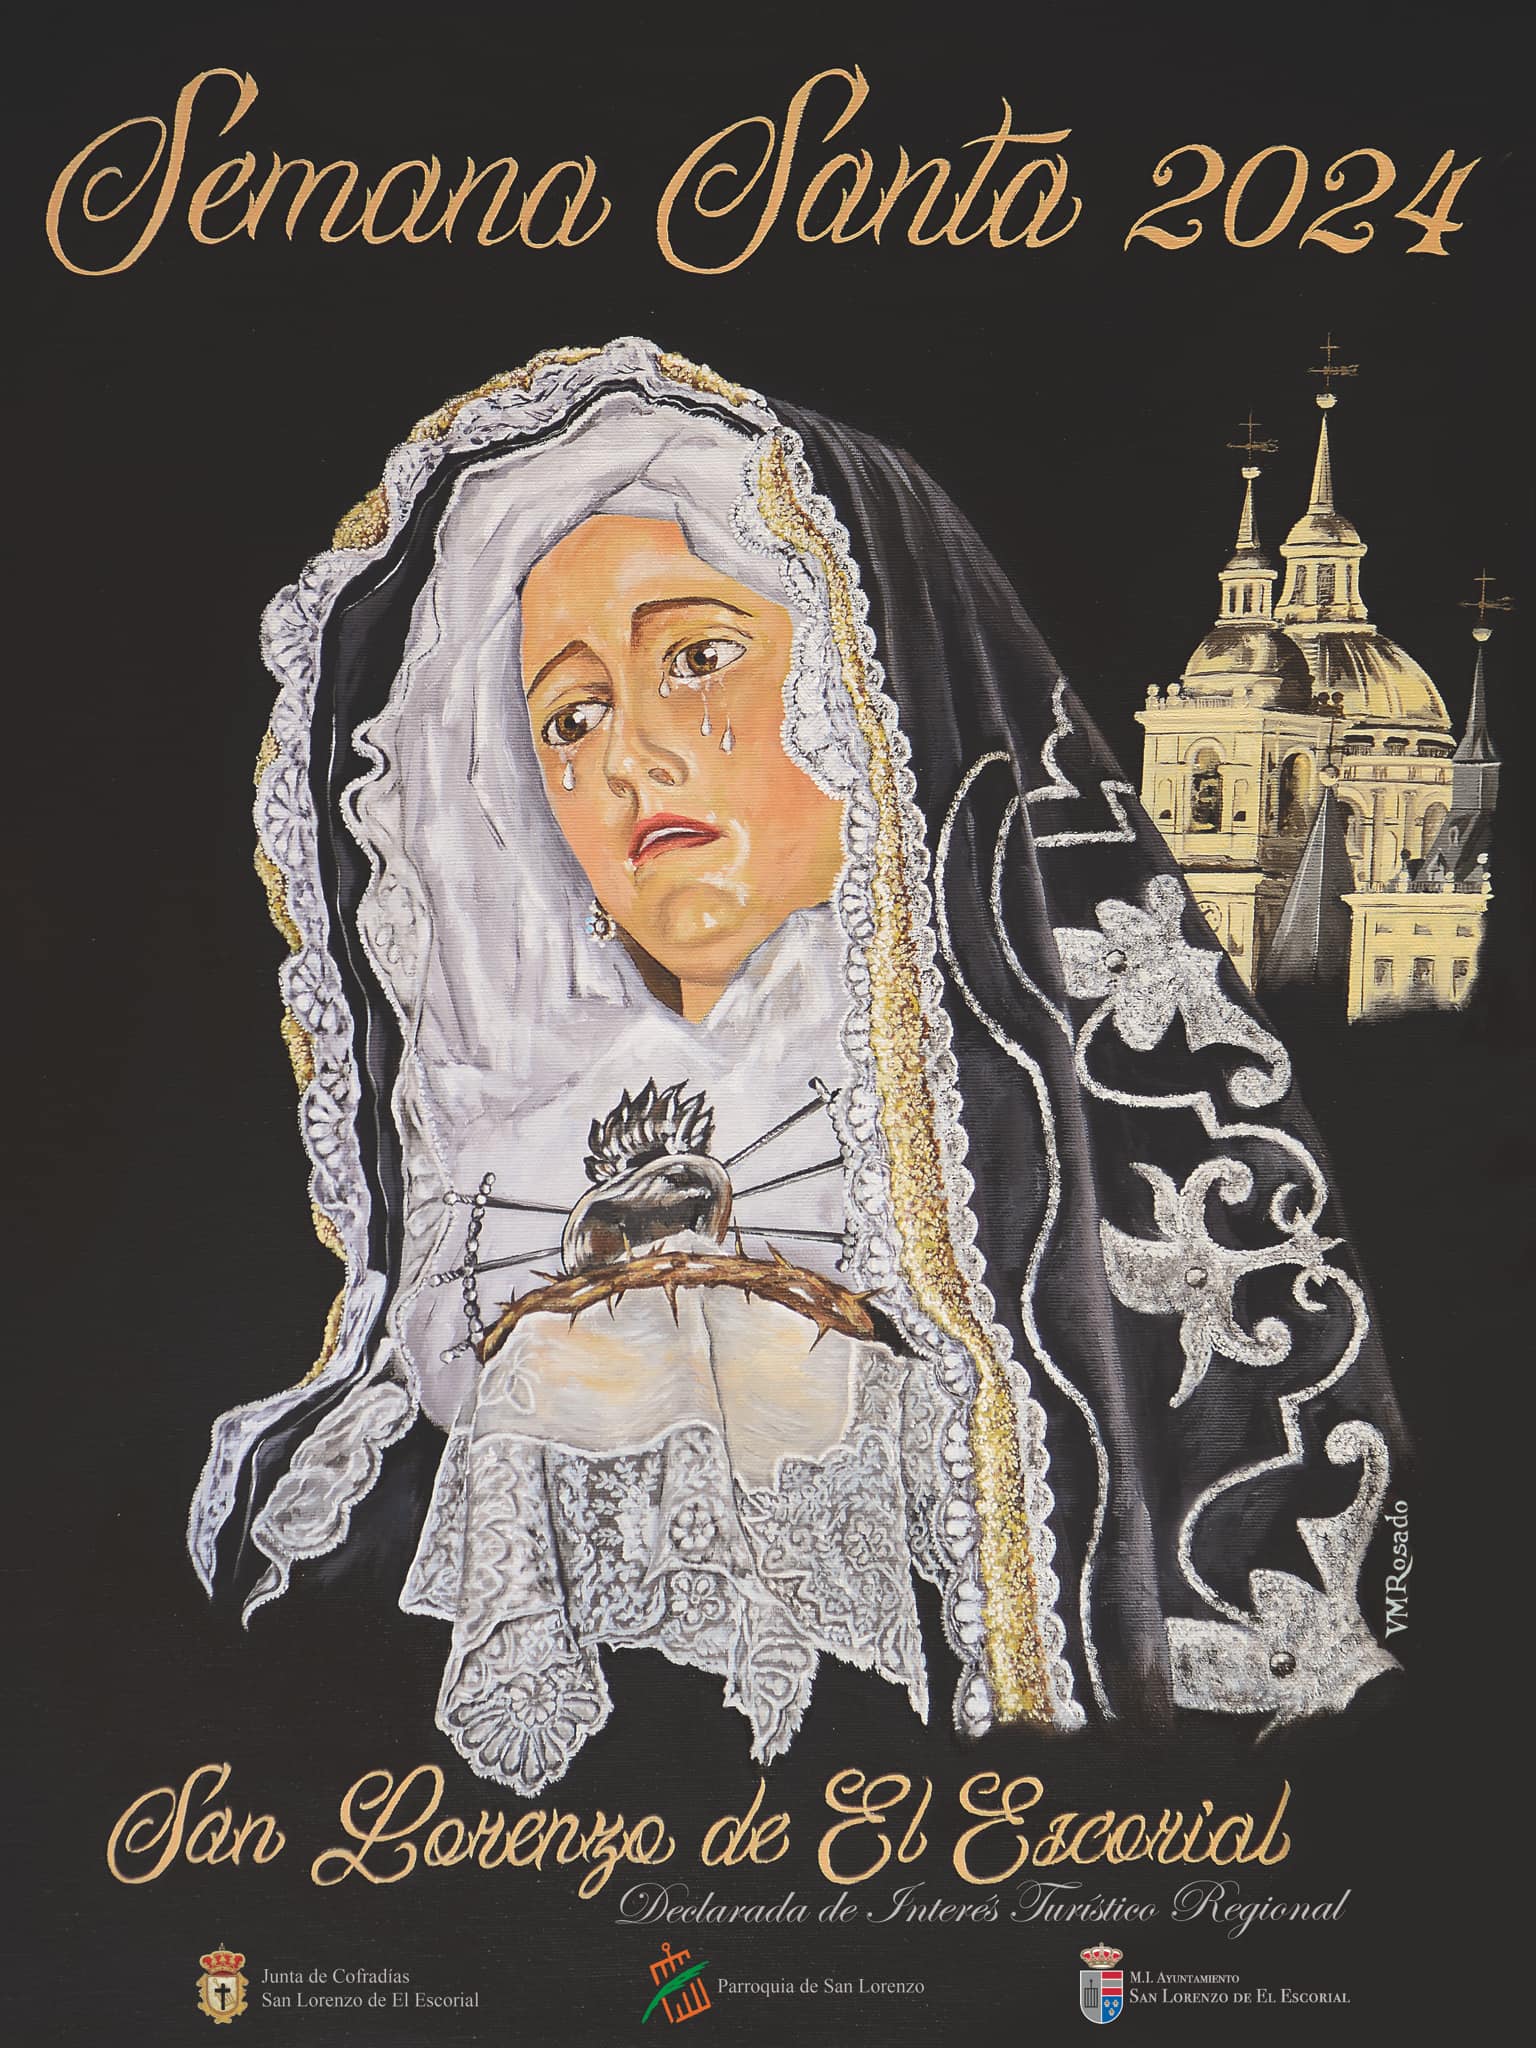 Cartel de la Semana Santa 2024 en San Lorenzo de El Escorial, obra de Vicente Rosado